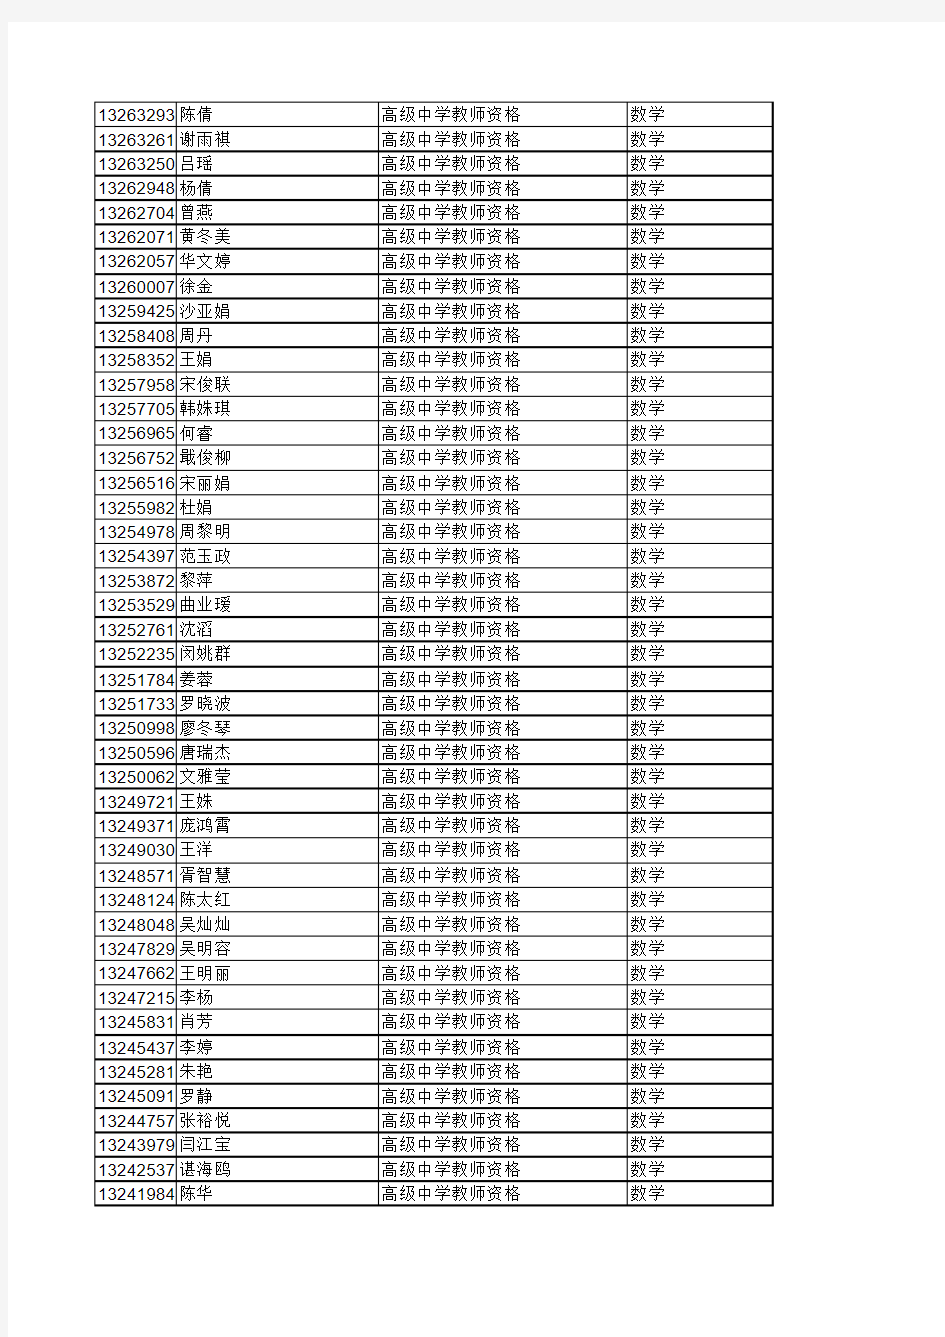 成都市2016年春季教师资格试讲考试安排表(挂出)